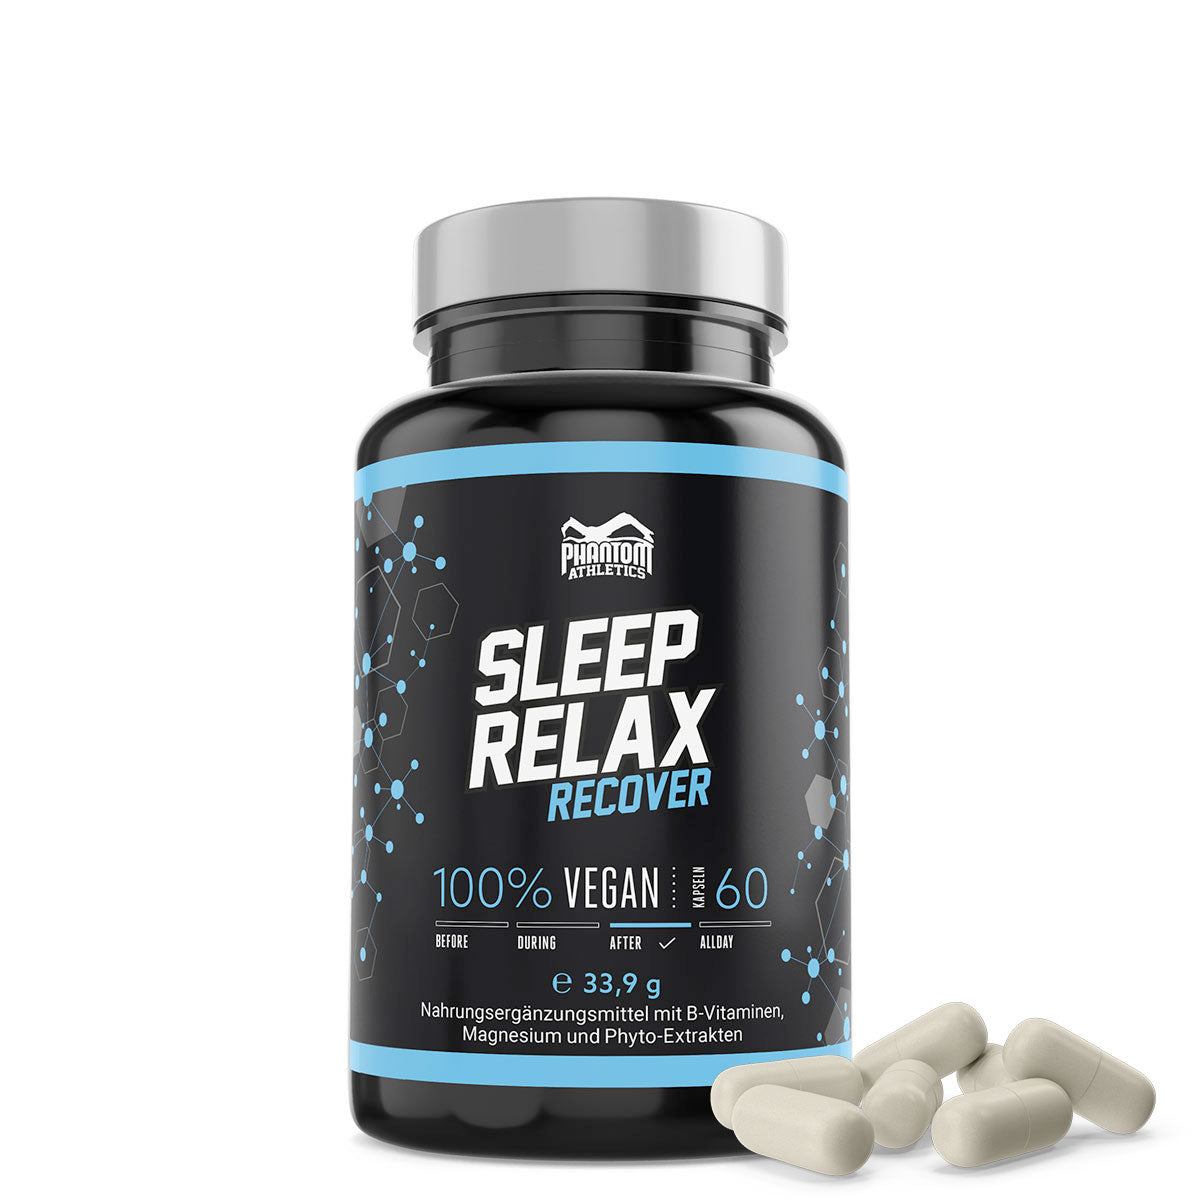 Phantom Sleep and Relax Supplement for bedre regenerering i kampsport.